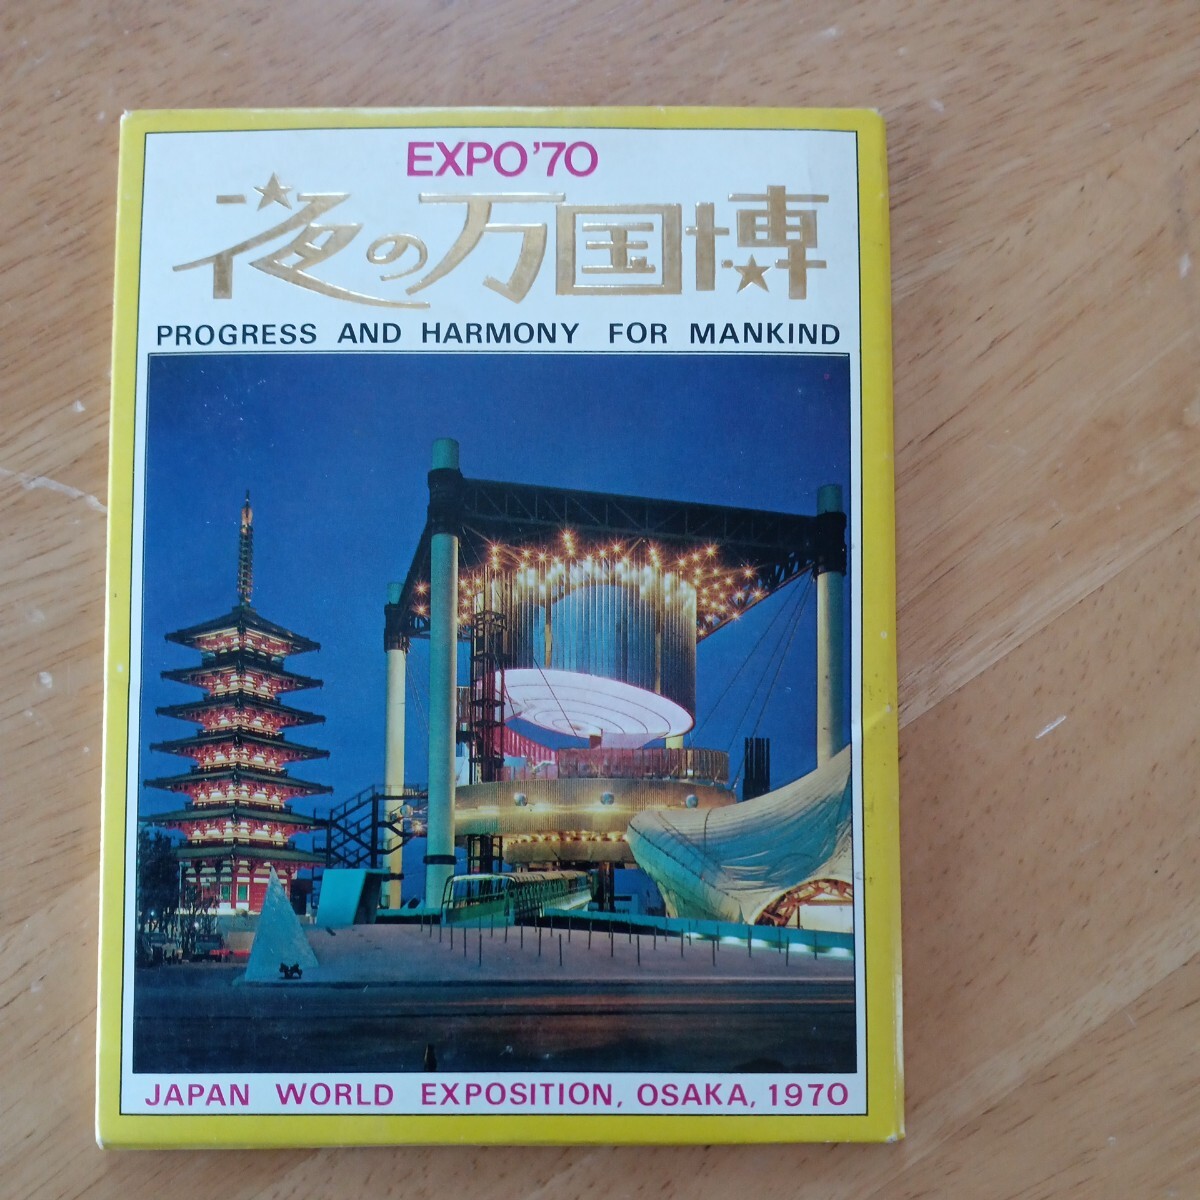 【送料無料】夜の万国博 大阪 万国博覧会 1970年 EXPO70 ポストカード レトロ 日本 人類の進歩と調和 昭和 懐かしい